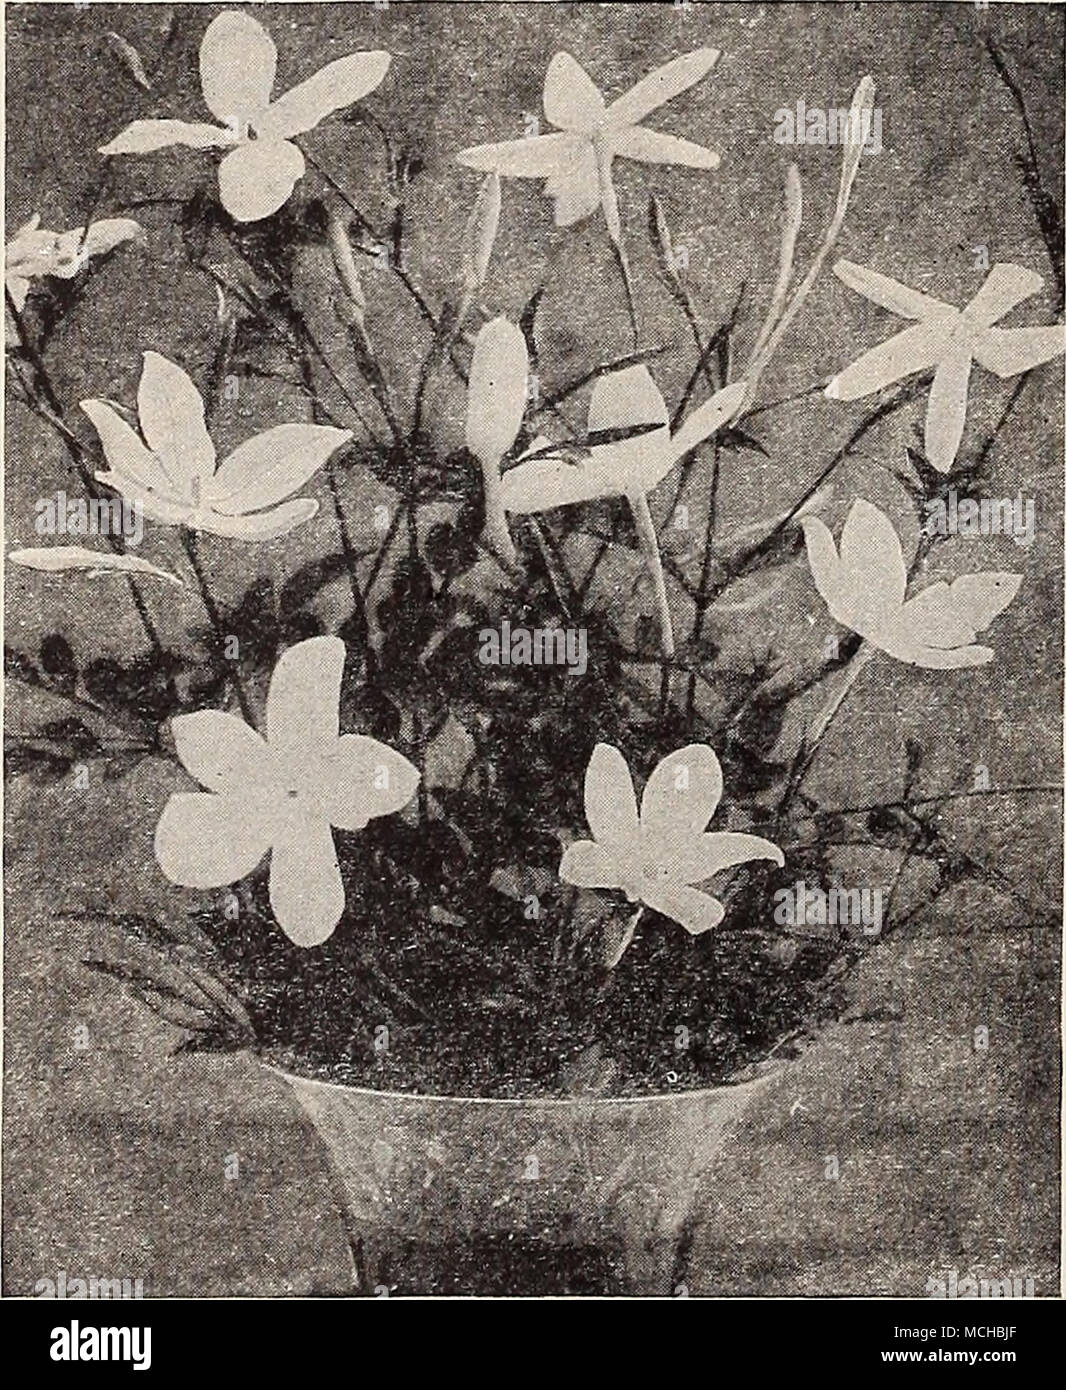 Jasminum Grandiflorum Gerbera Jamesoni (Transvaal o Barberton Daisy)  durante los últimos años esta Daisy desde el Transvaal ha sido ampliamente  destacado por los floristas como flor de corte, especial- mente a